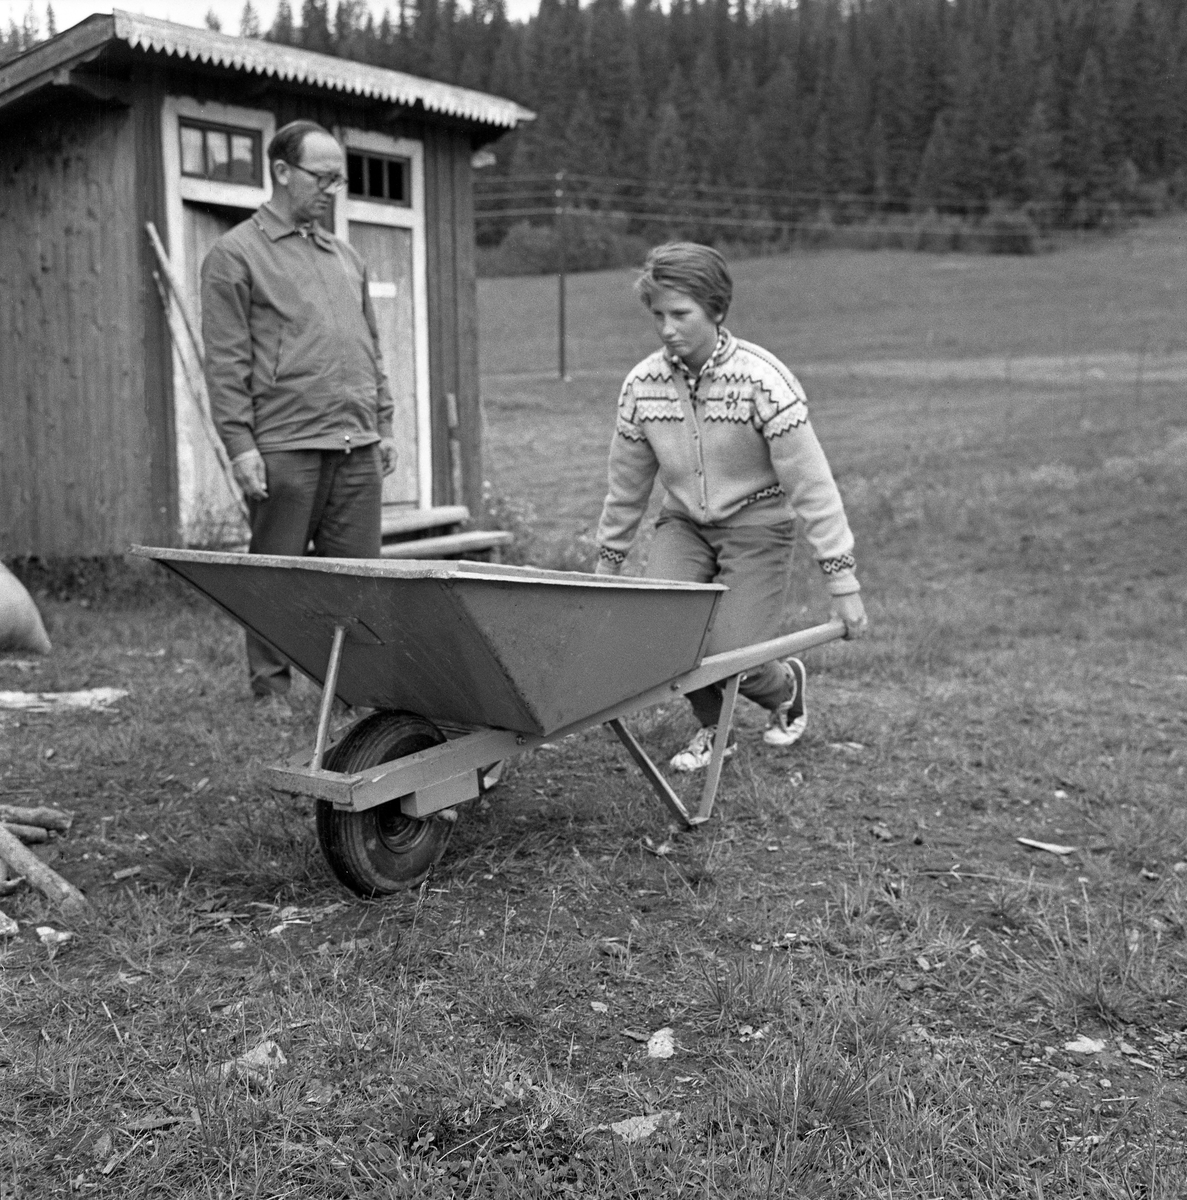 Jente med trillebår, fotografert under en 4H-leir i Søre Osen i Trysil i Hedmark i 1962. Da dette bildet ble tatt sto jenta med bøyde knær, enten for å løfte eller sette fra seg den tunge båra. En voksen mann sto og betraktet henne, antakelig for å bedømme arbeidet. Bak han ser vi en utedo med to rom.